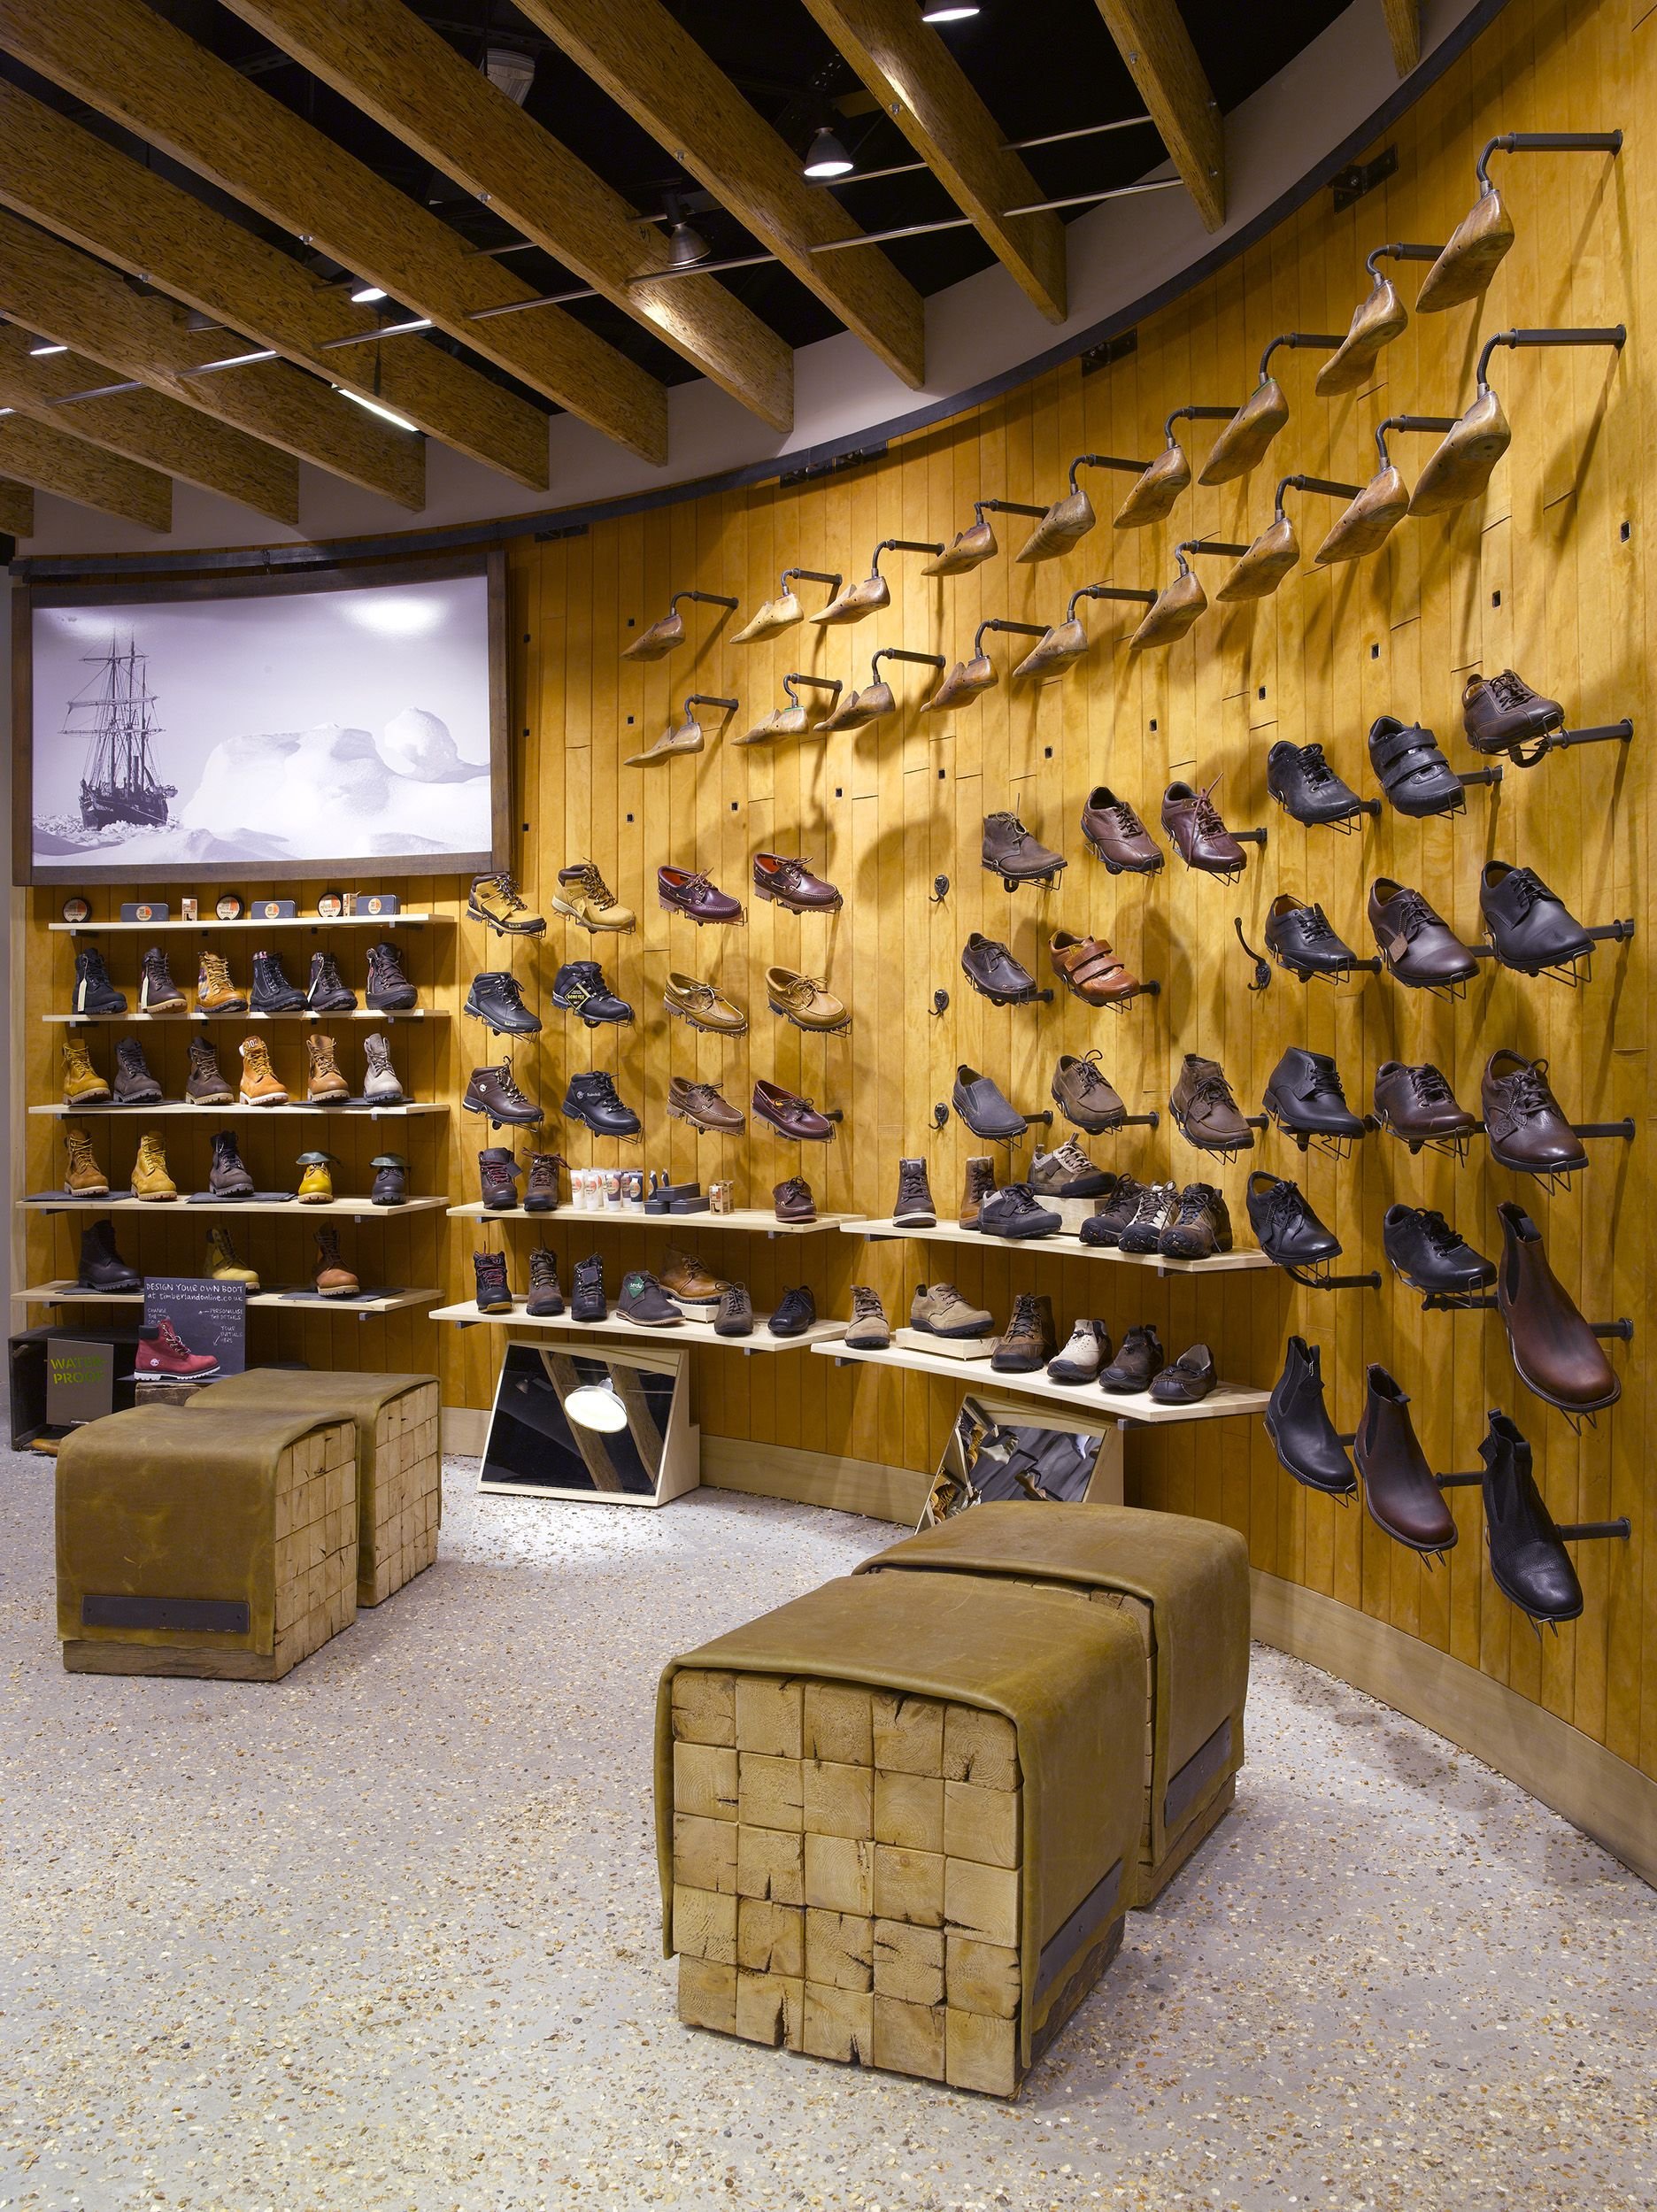 Магазин обуви shop. Timberland Butik. Интерьер магазина обуви. Интерьер обувного бутика. Мебель для магазина обуви.